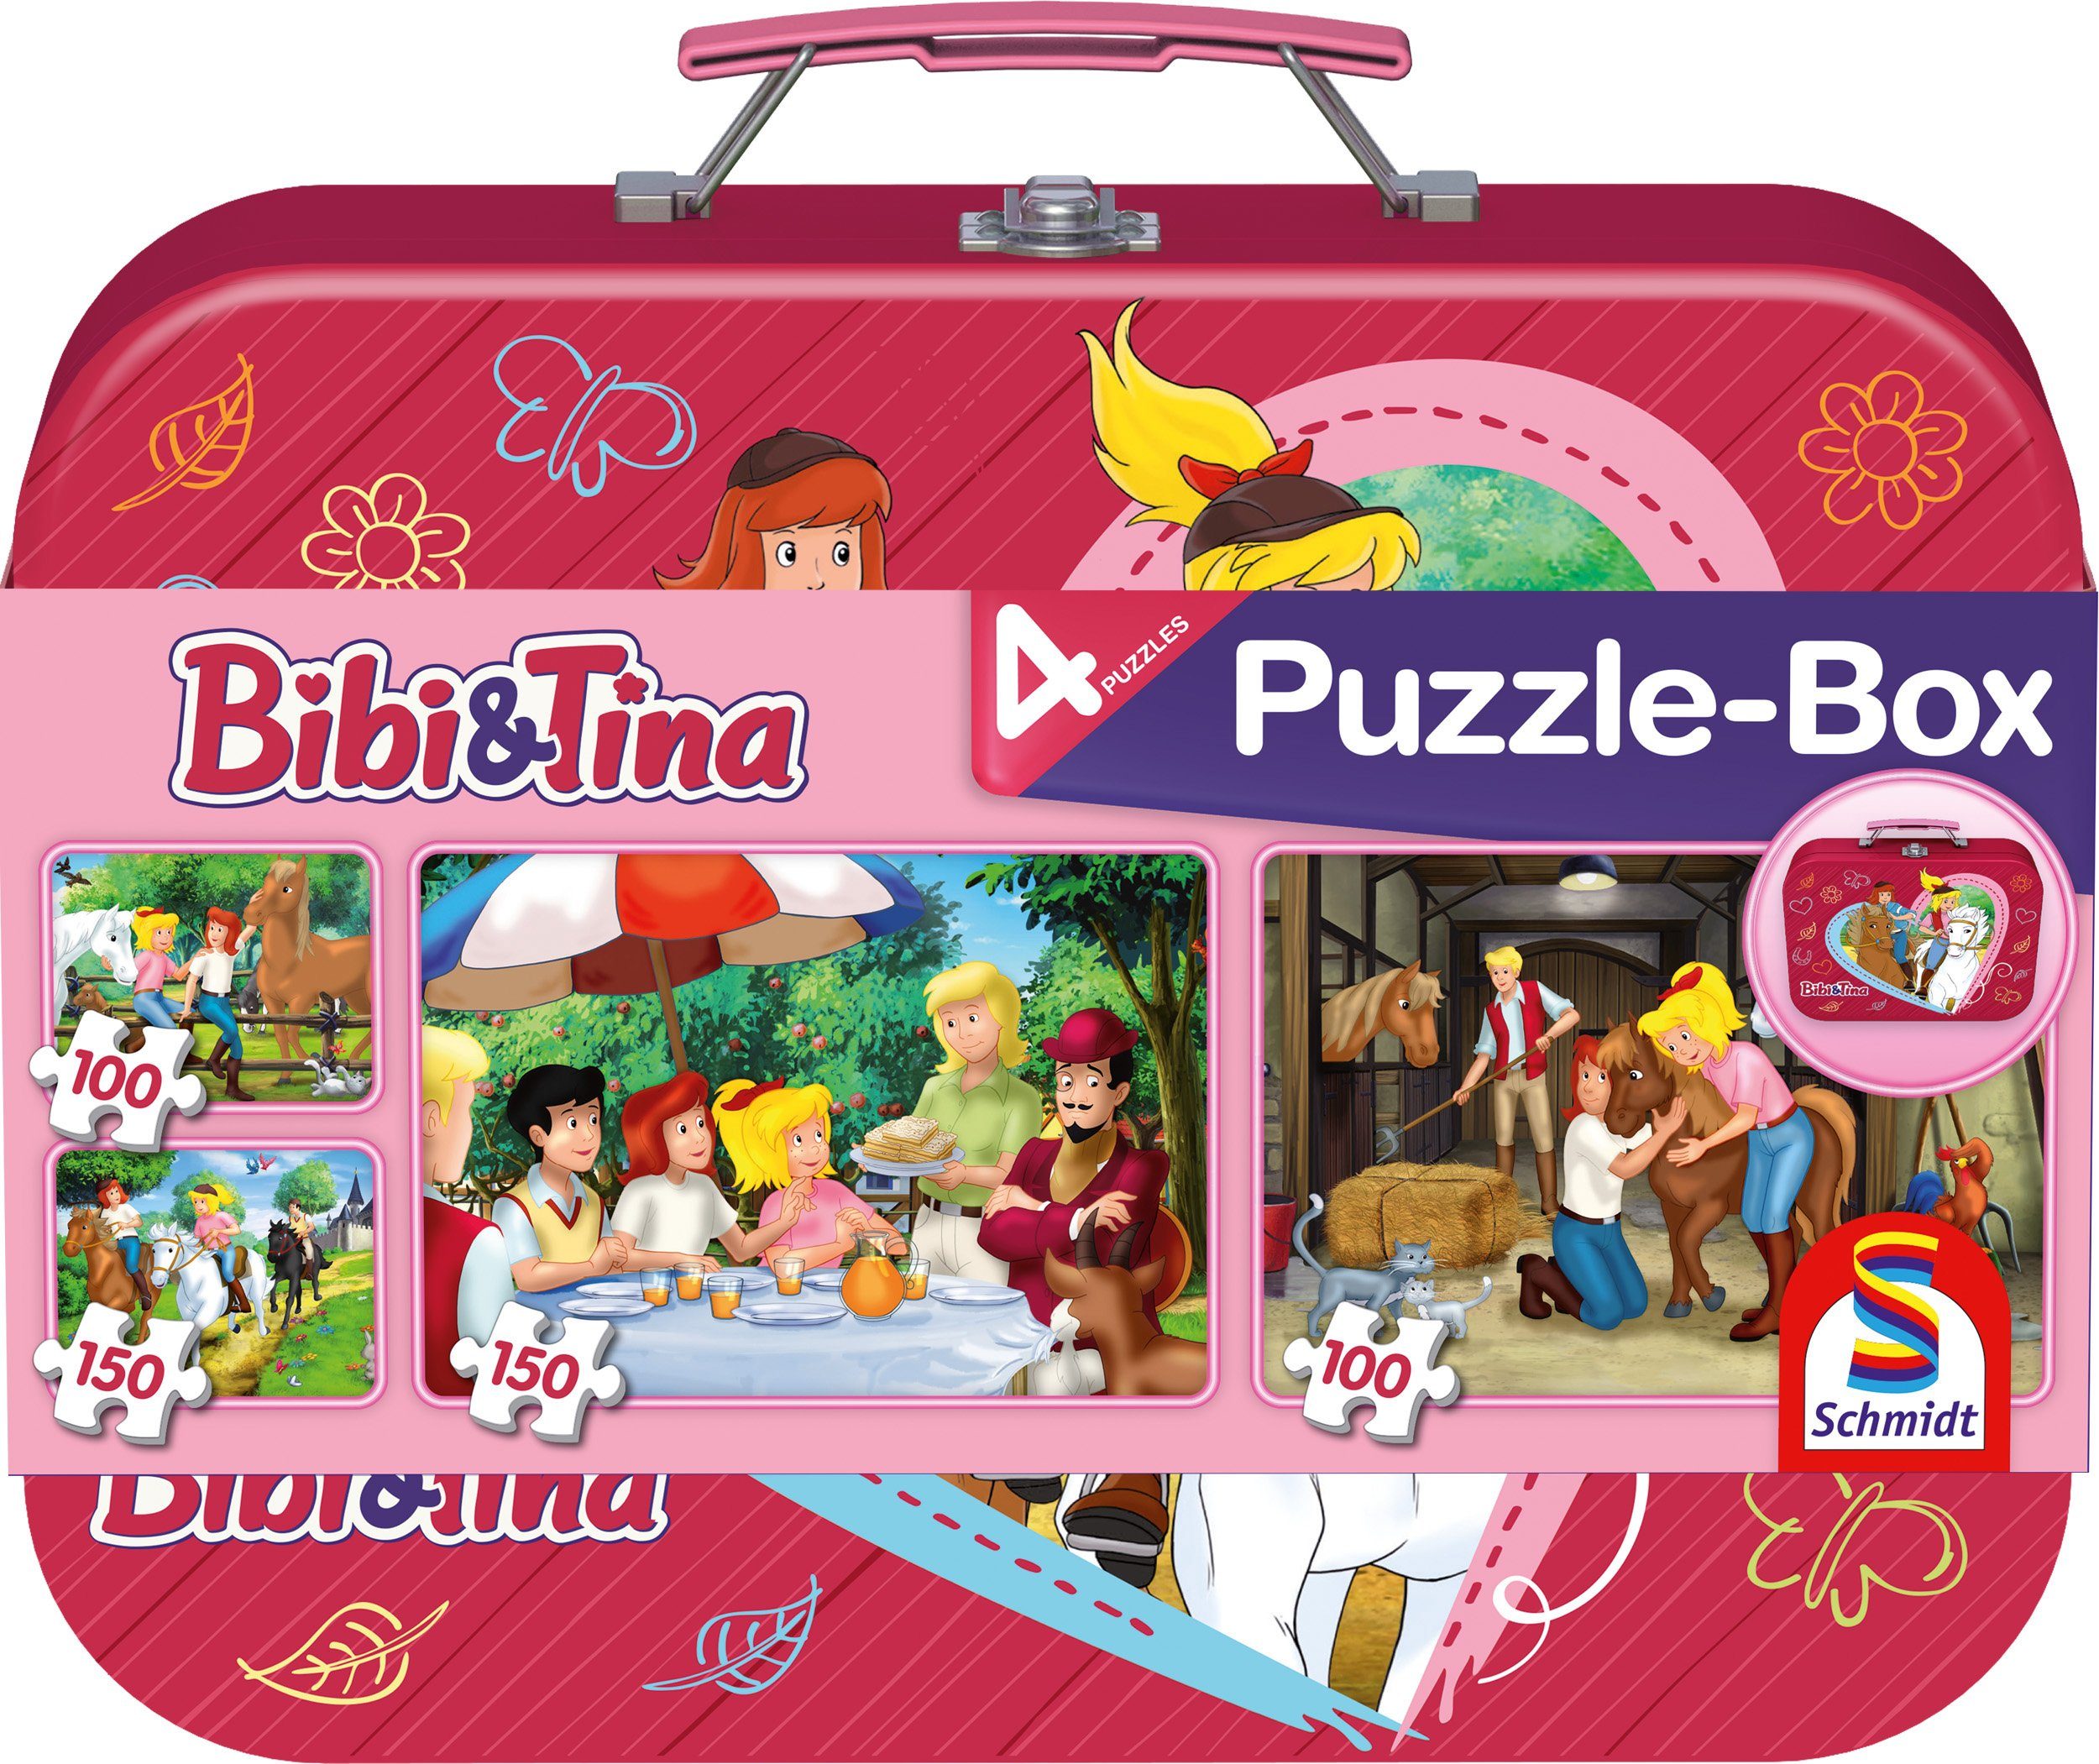 Schmidt Spiele im Puzzle 500 Bibi + Puzzleteile Tina, Puzzlebox Metallkoffer